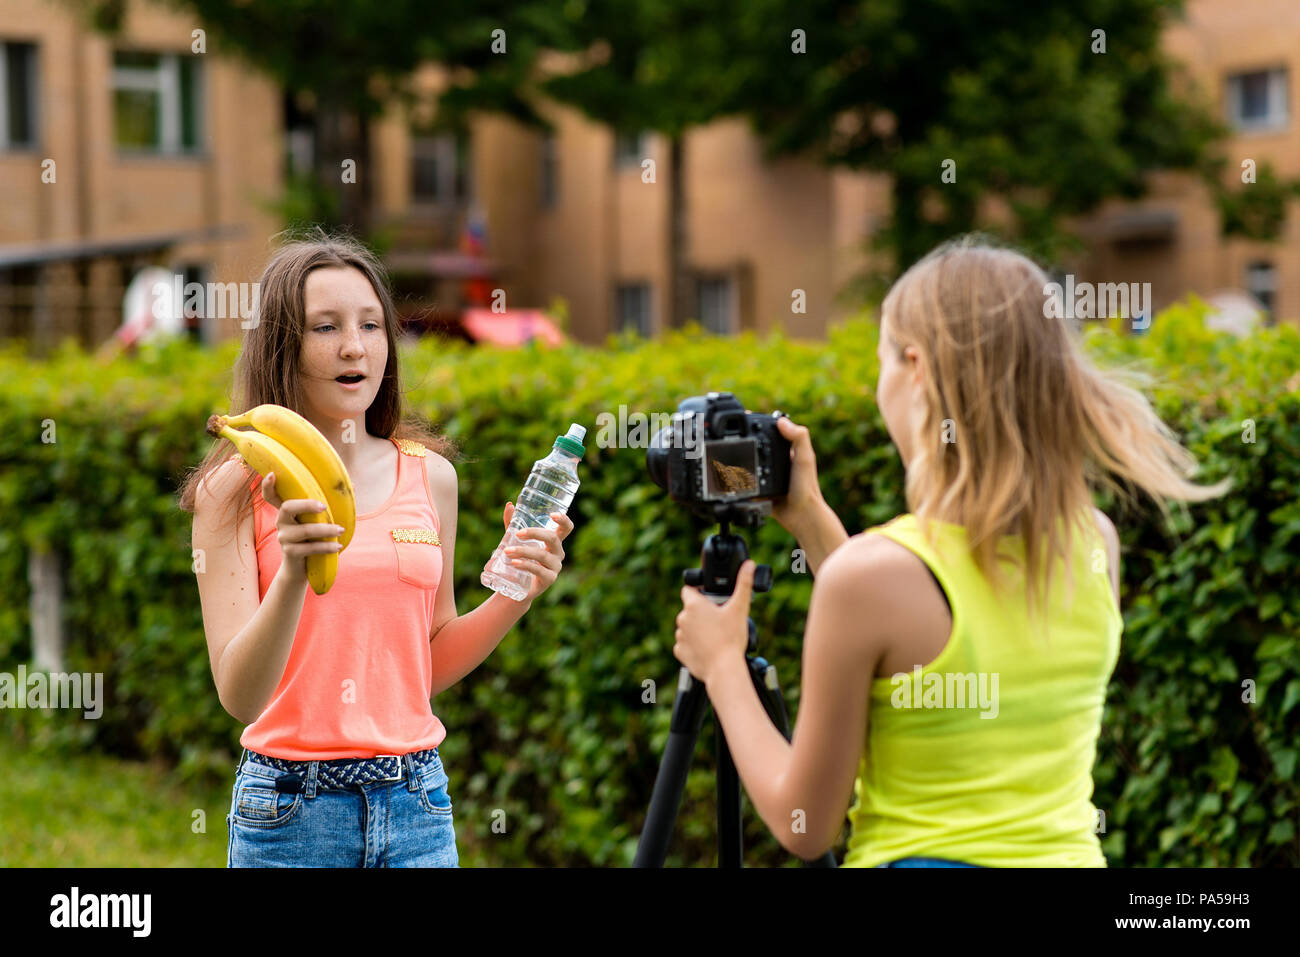 Les jeunes filles des blogueurs, à l'été dans la ville à la nature. Enregistrer une vidéo sur l'appareil photo. Dans ses mains tient une bouteille d'eau et deux bananes. Le conce Banque D'Images